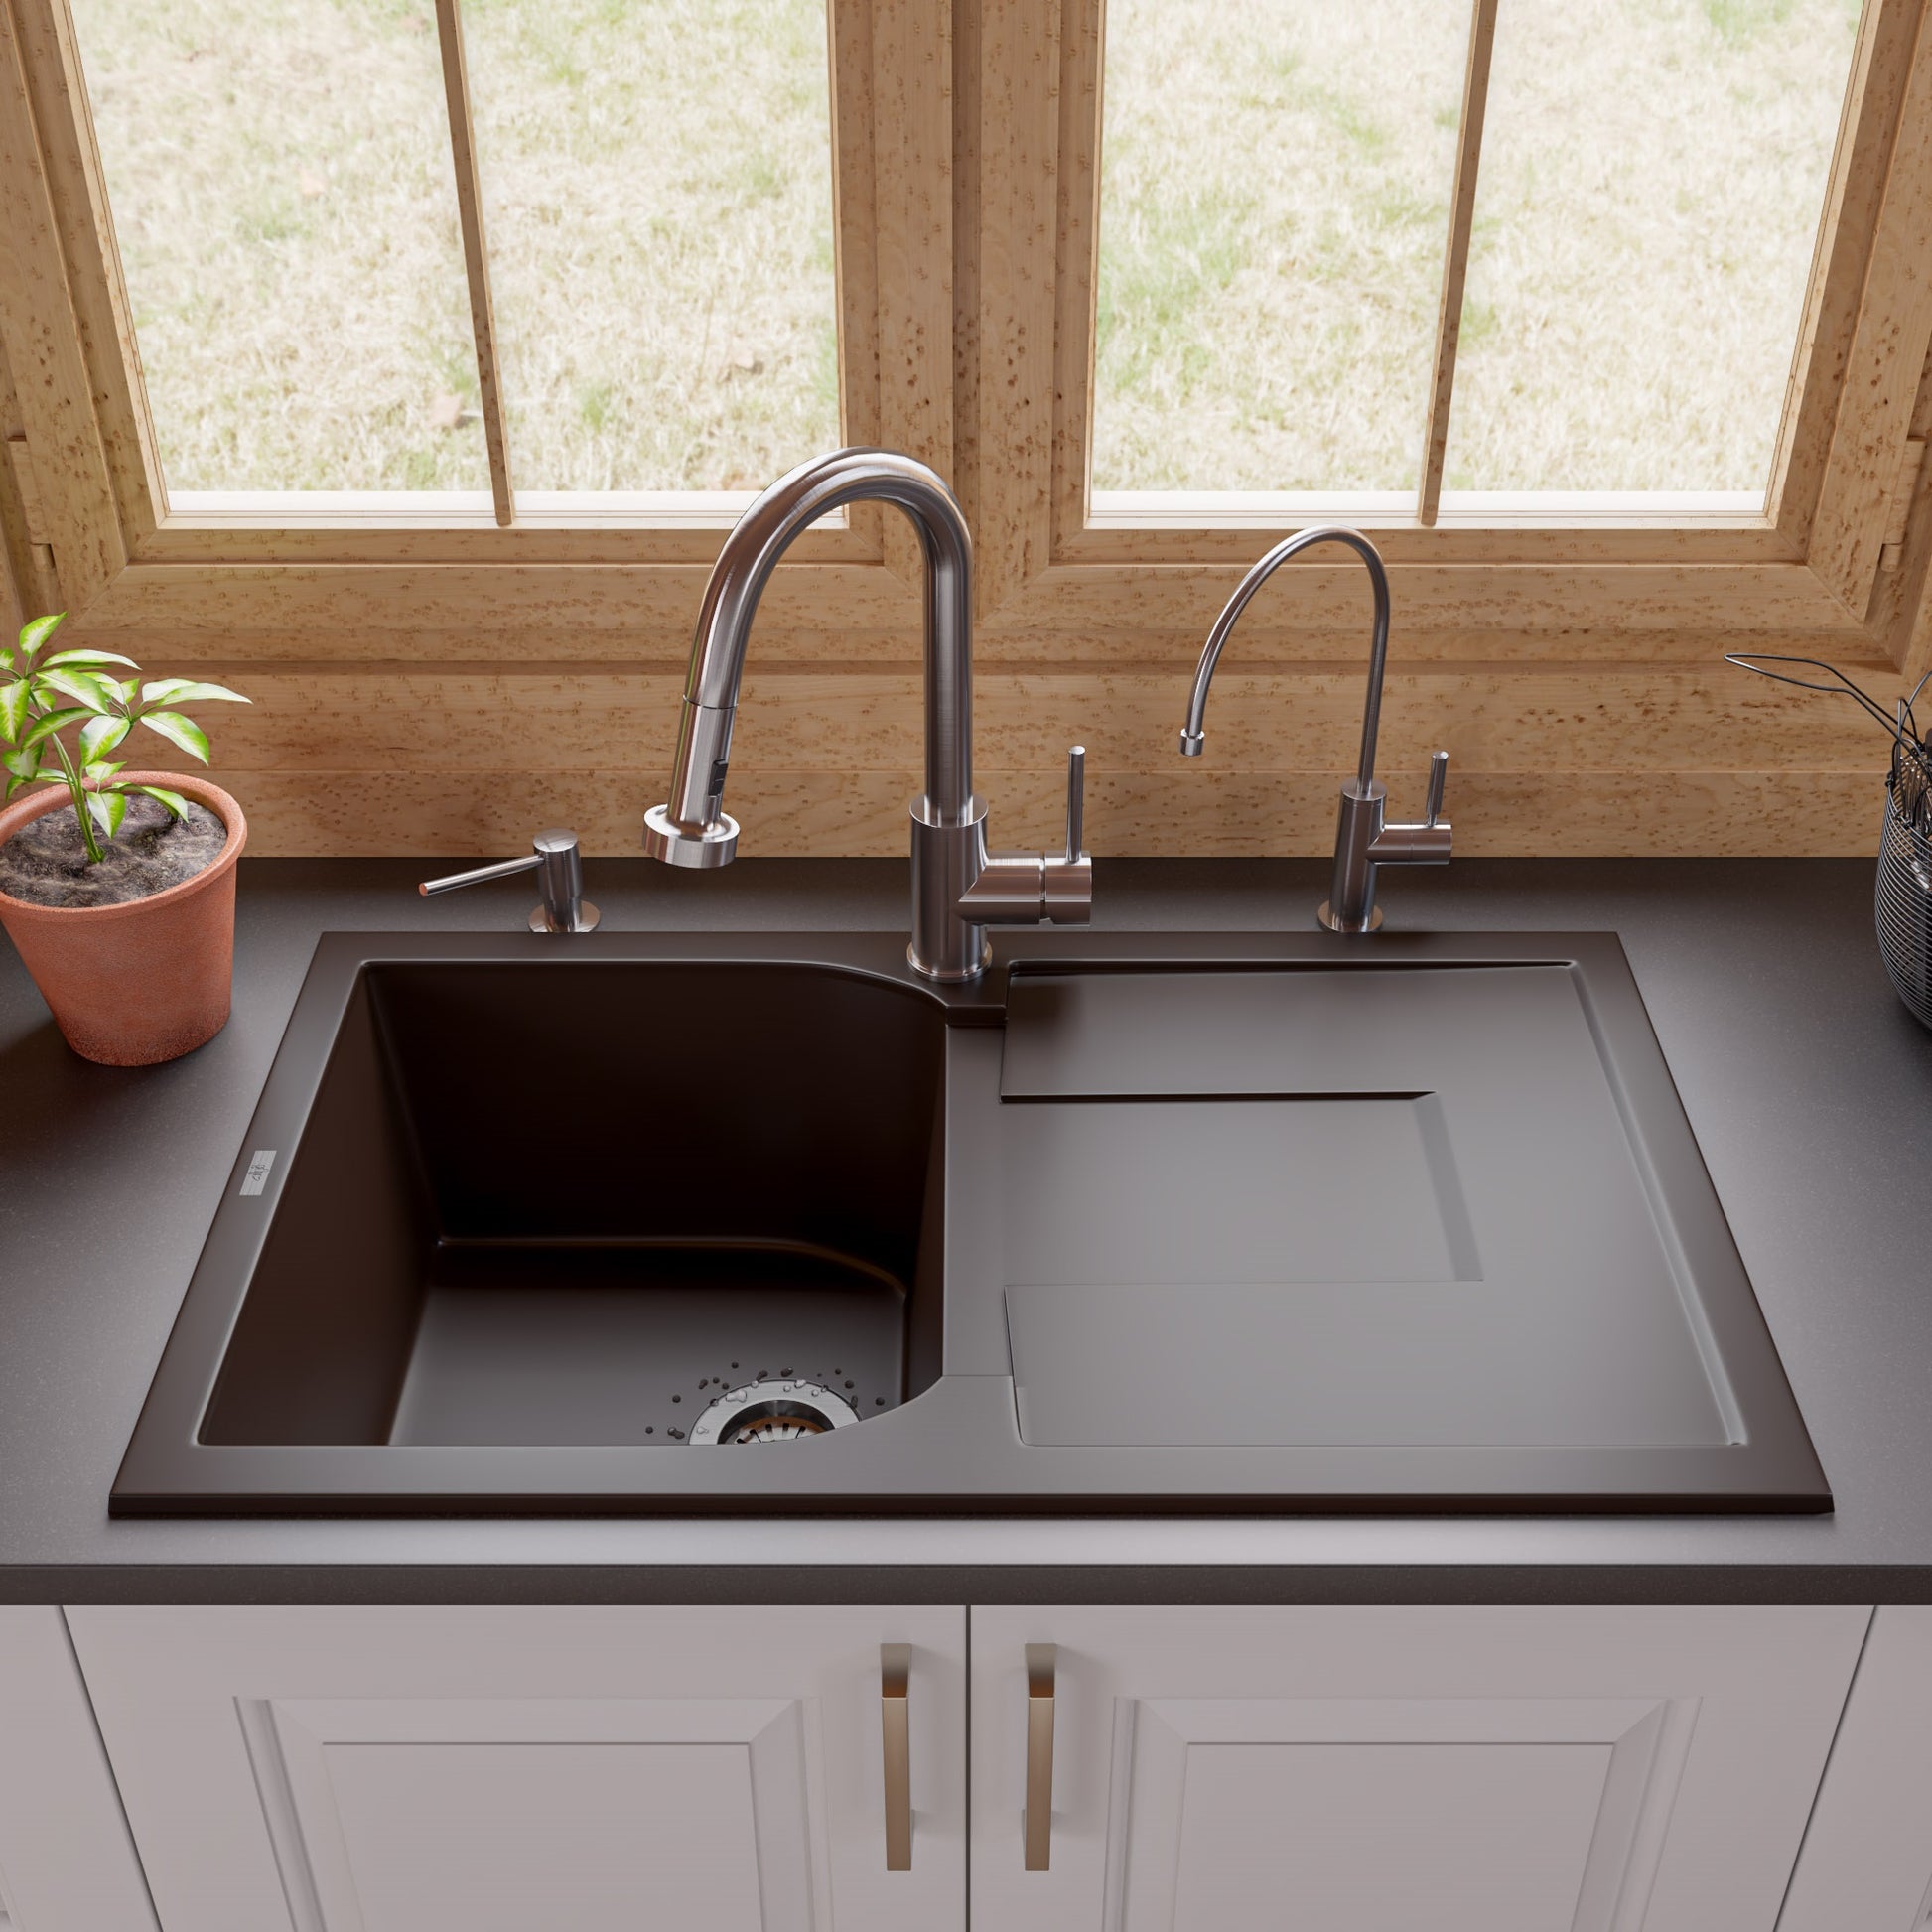 Alfi brand AB1620DI 34" Single Bowl Granite Composite Kitchen Sink with Drainboard Kitchen Sink ALFI brand   